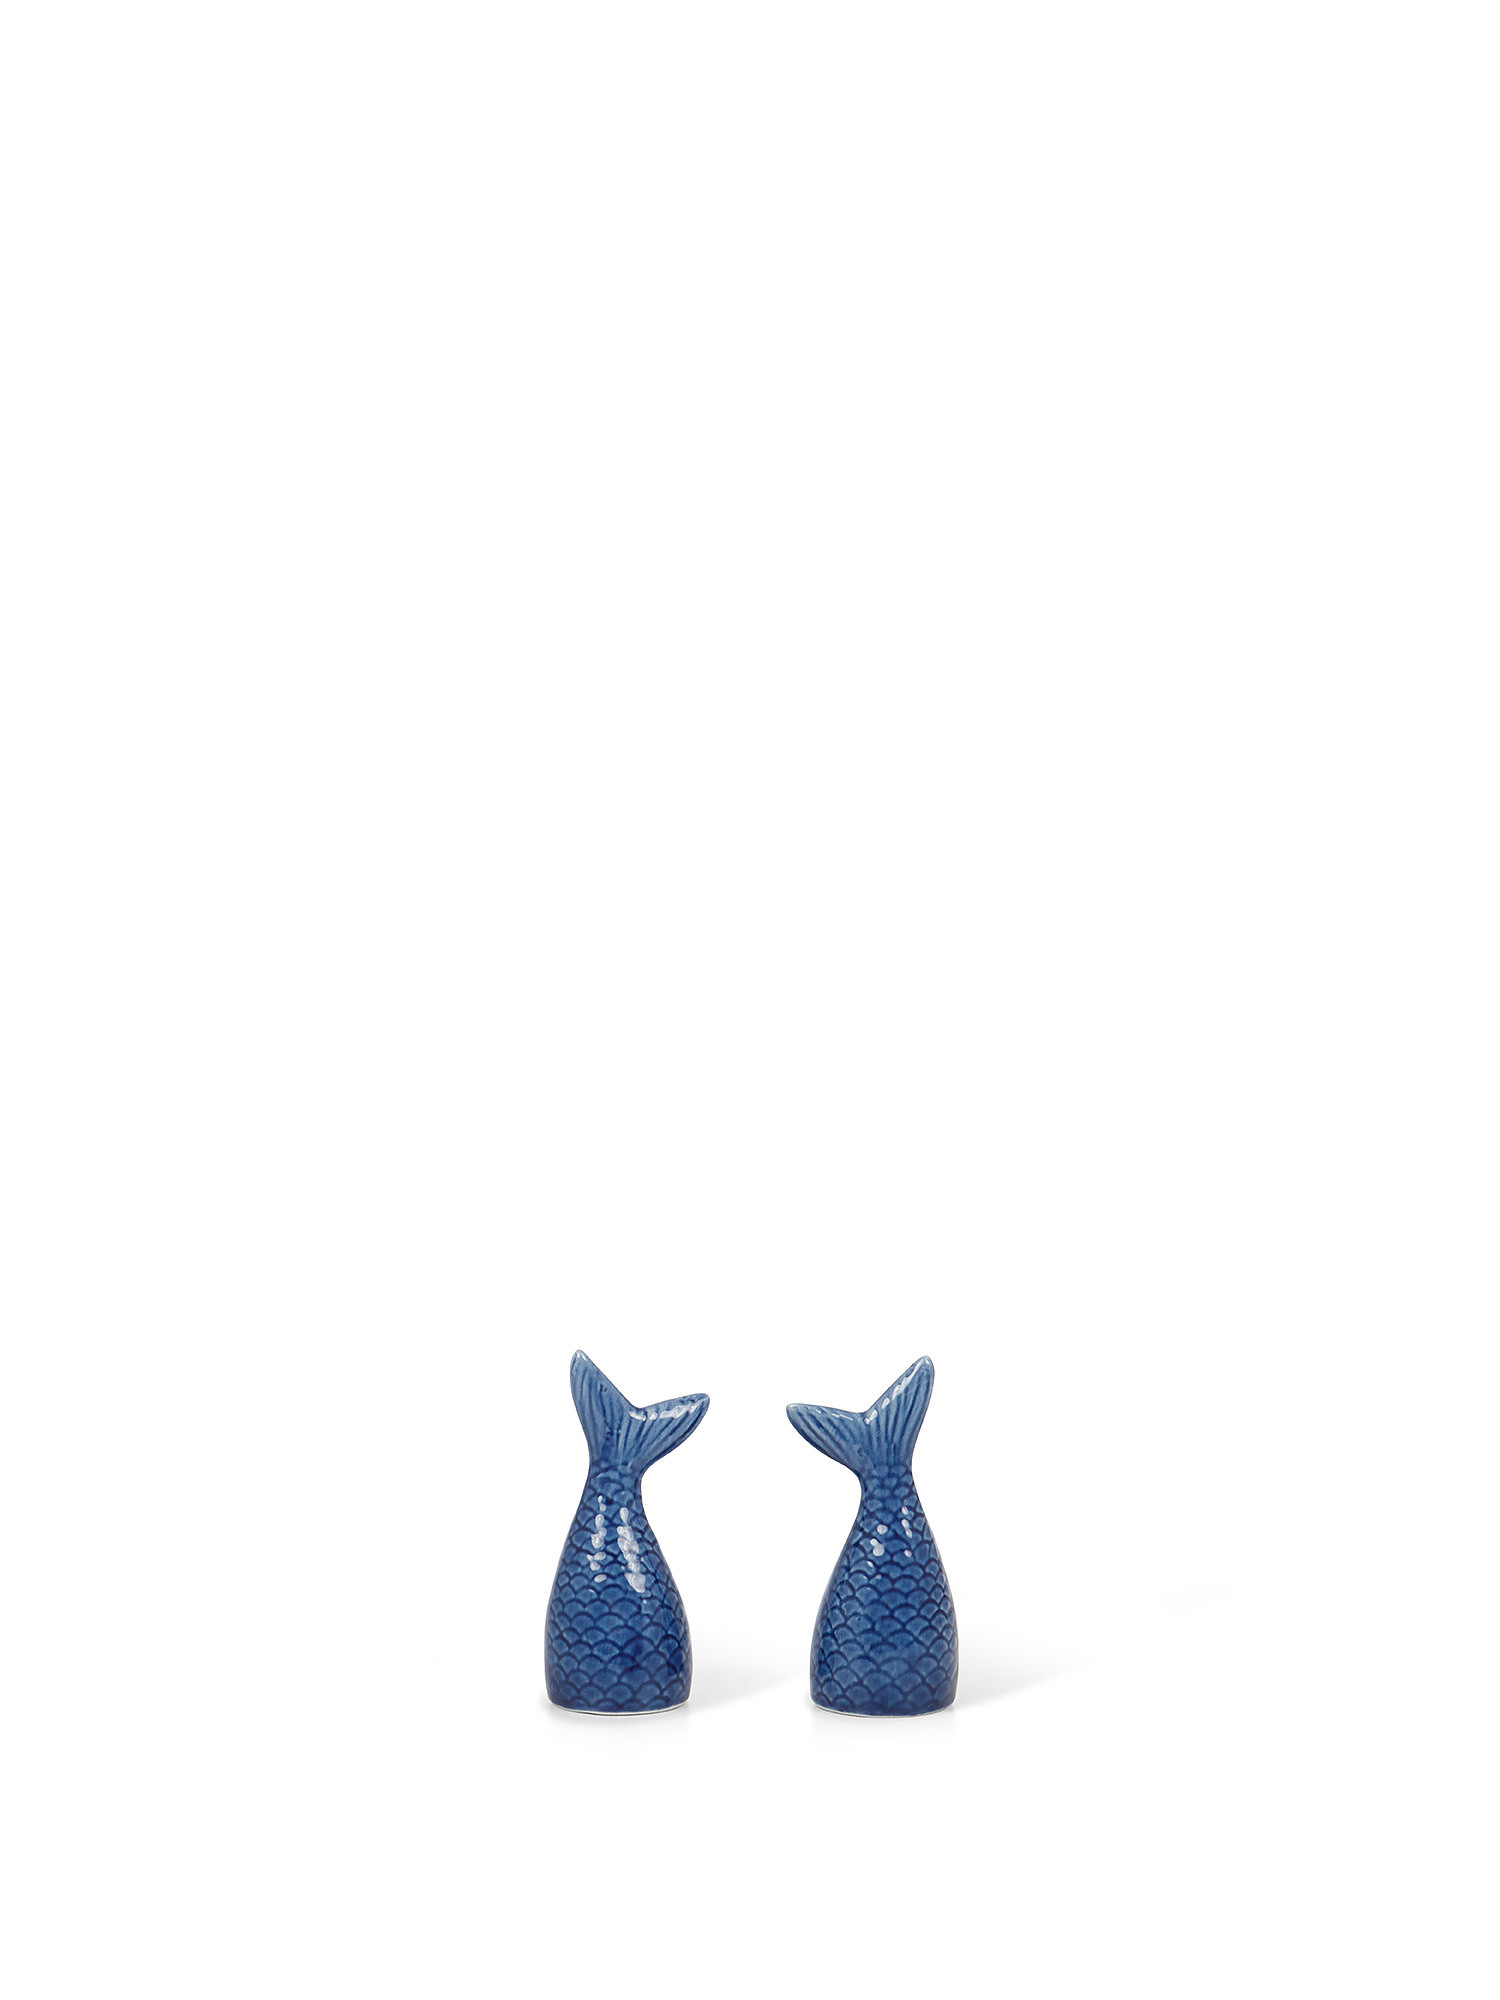 Porcelain mermaid tail salt and pepper set, Blue, large image number 0